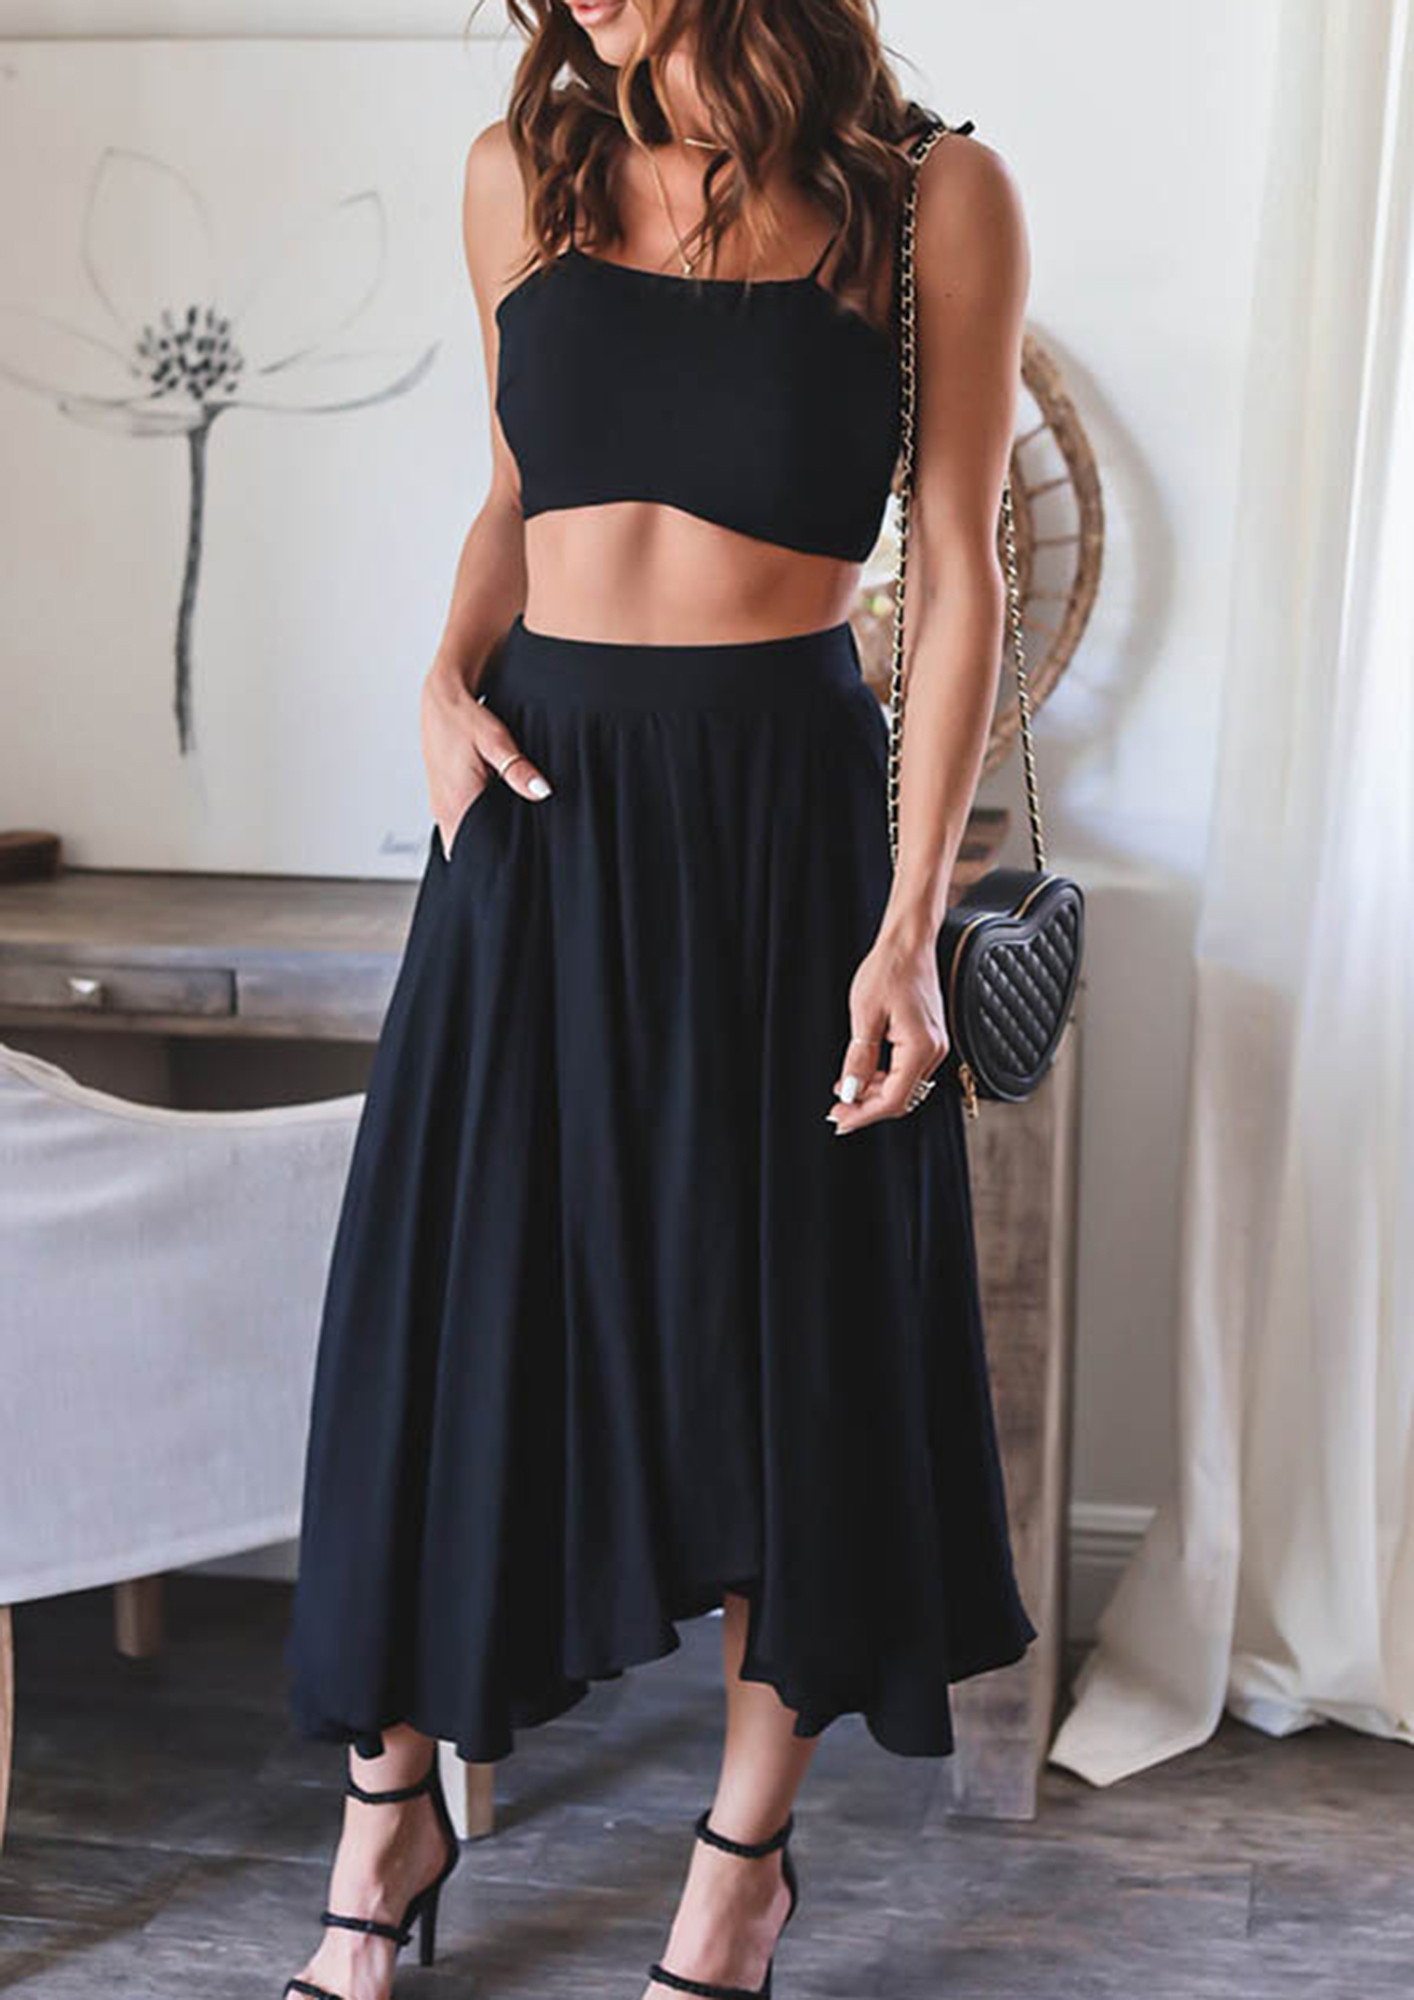 High Waisted Black Skirt For Women - Buy High Waisted Black Skirt For Women  online in India